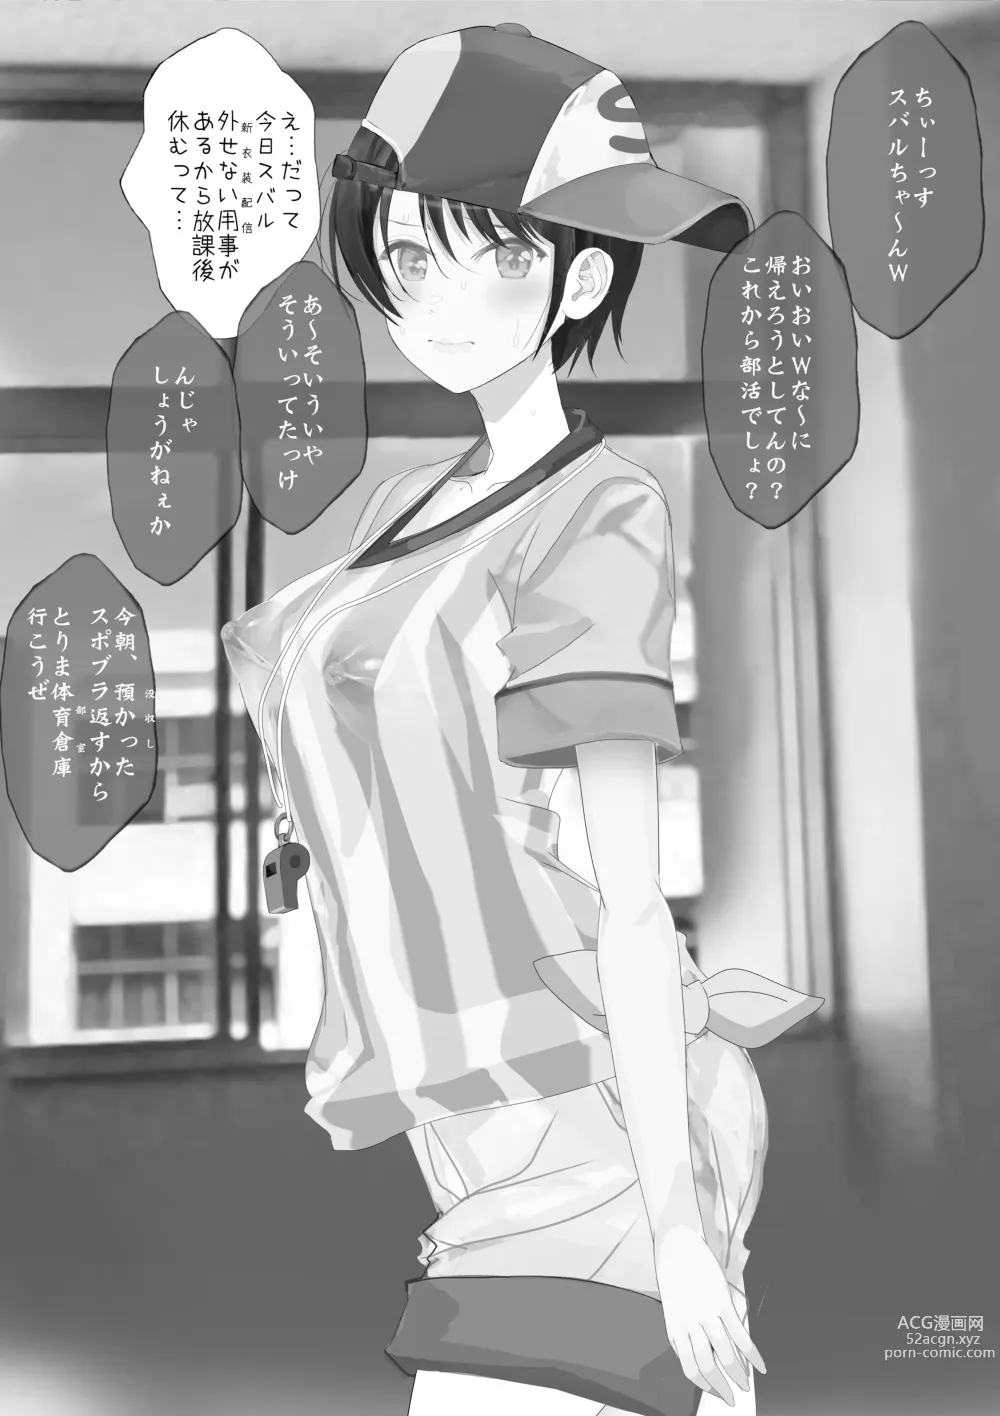 Page 2 of doujinshi Shin Ishou Ohirome Mae de Arou tomo Listener no Akugyaku o Isshin ni Seou Kanashimi no Ouji RX Robo Subaru